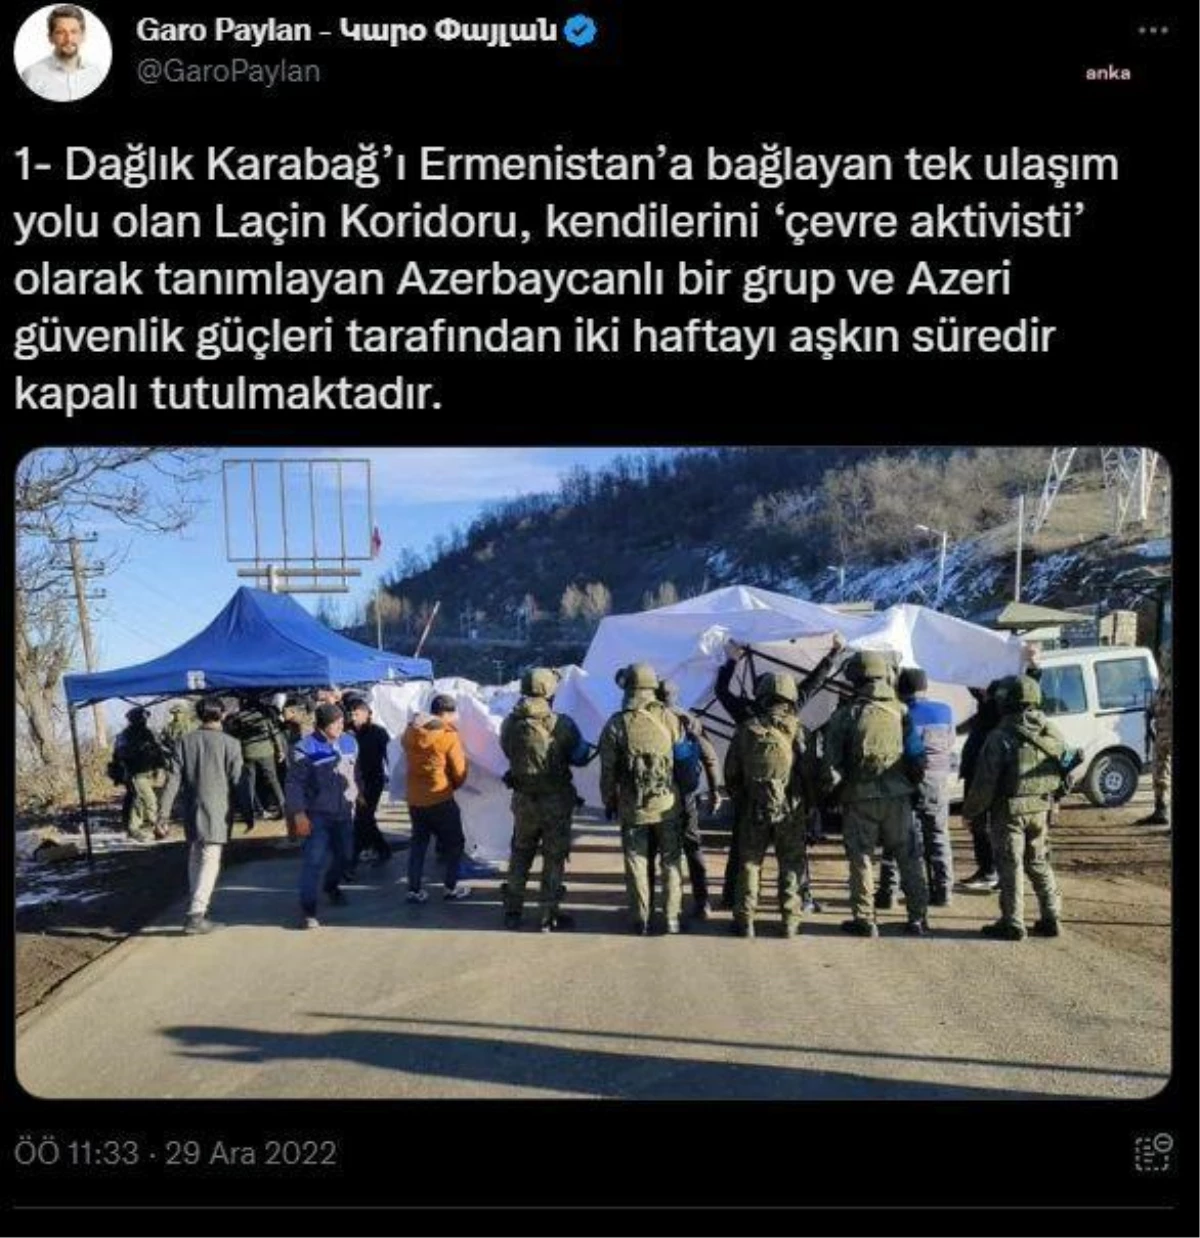 Garo Paylan\'dan Cumhurbaşkanı Erdoğan\'a \'Laçin Koridoru\' Çağrısı: "Türkiye Dağlık Karabağ\'da Büyüyen İnsani Krize Duyarsız Kalmamalıdır"